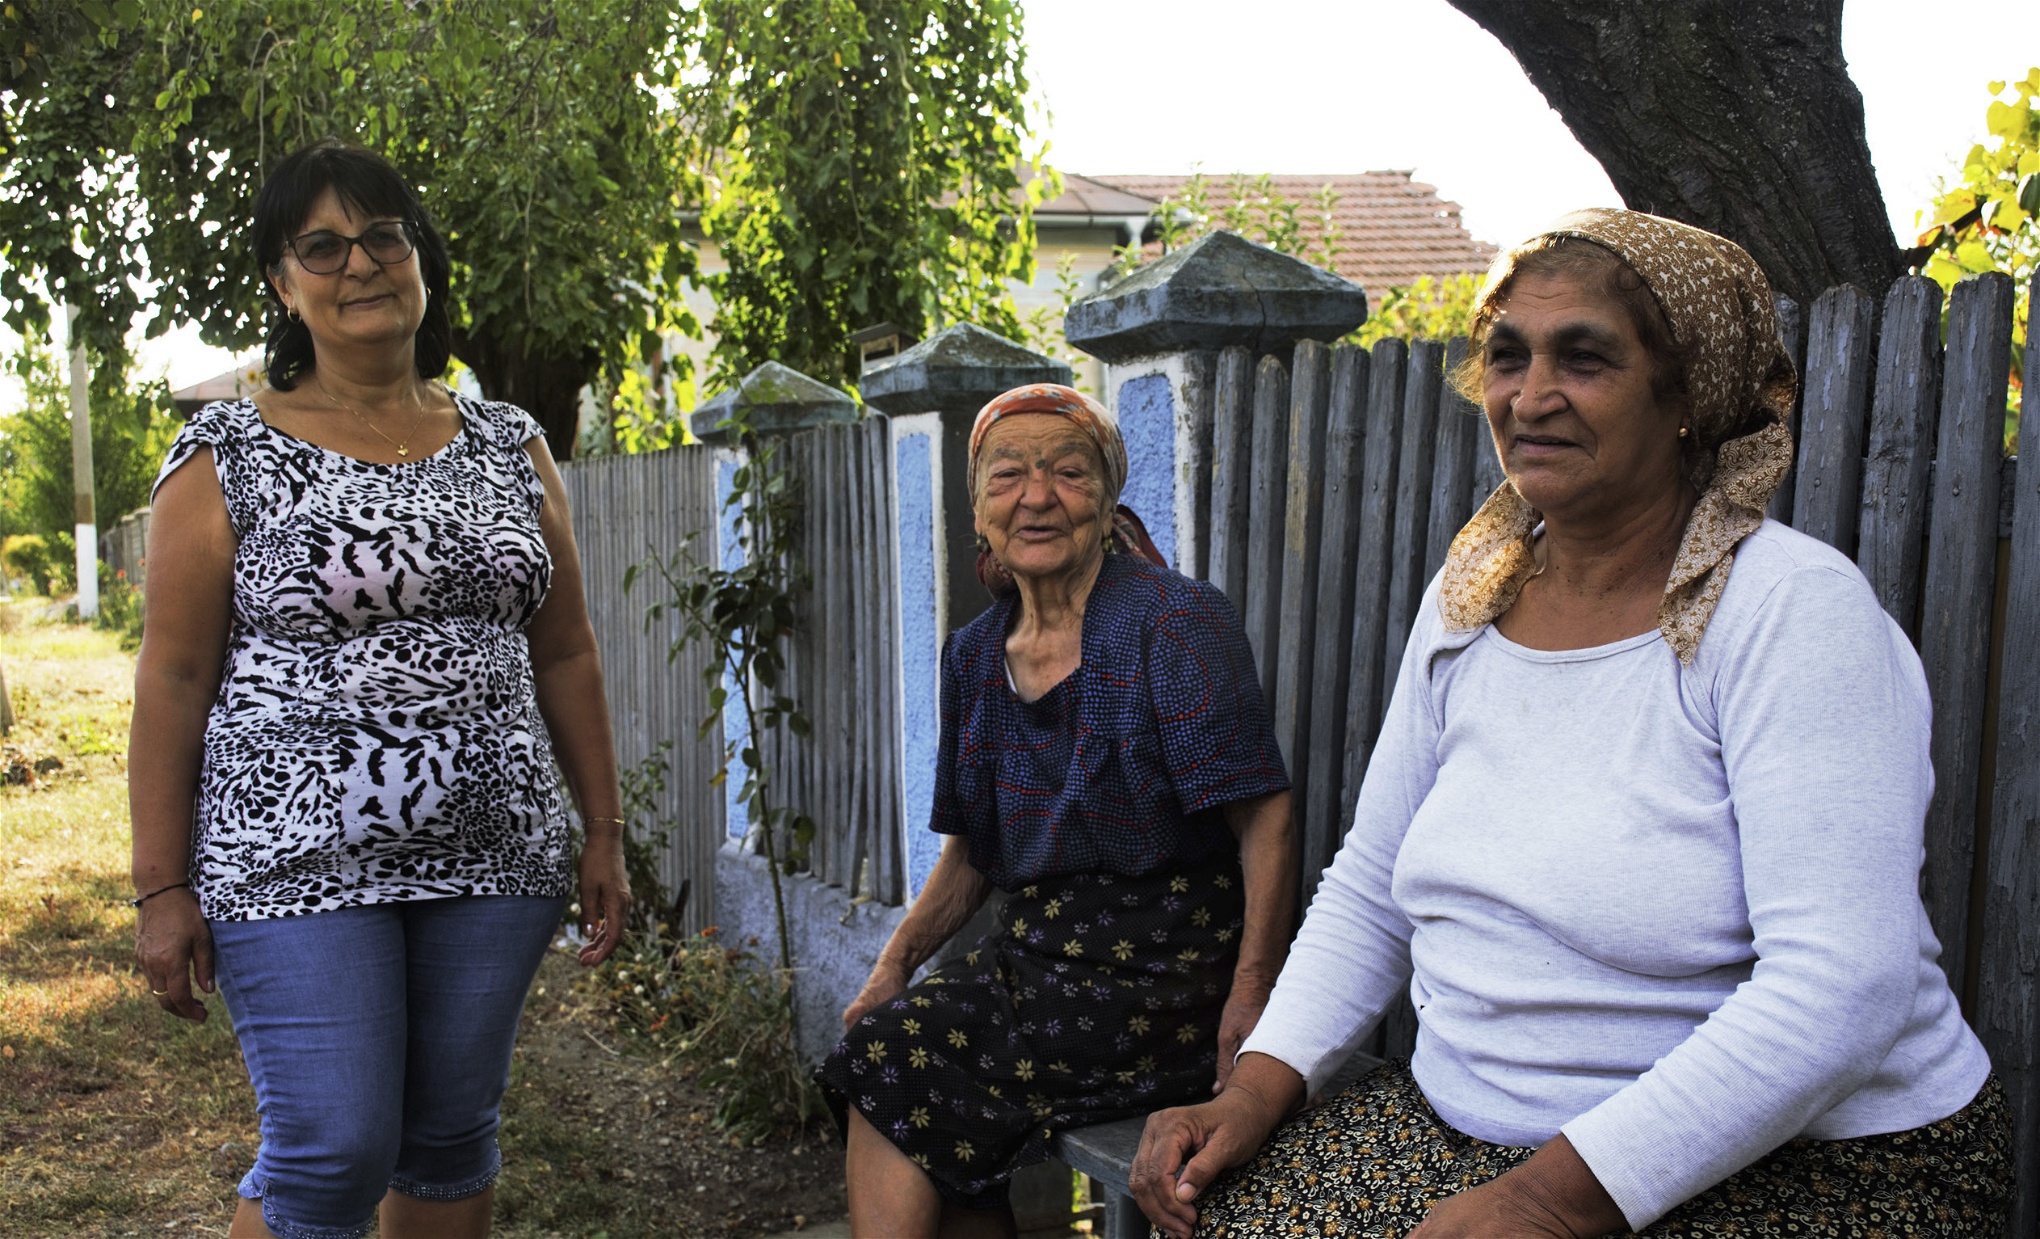 Gina Turcin är hemma i det lilla samhället Piatra-Holt i Rumänien på semester och träffar gamla grannar och vänner. Till vardags är hon en av hundratusentals rumänska kvinnor som arbetar som hemvårdare i Italien. Silvia Mitran, längst till höger, försökte vid sextio års ålder att söka
lyckan som ”badante” i Italien, men hon trivs bättre hemma och återvände till Rumänien.